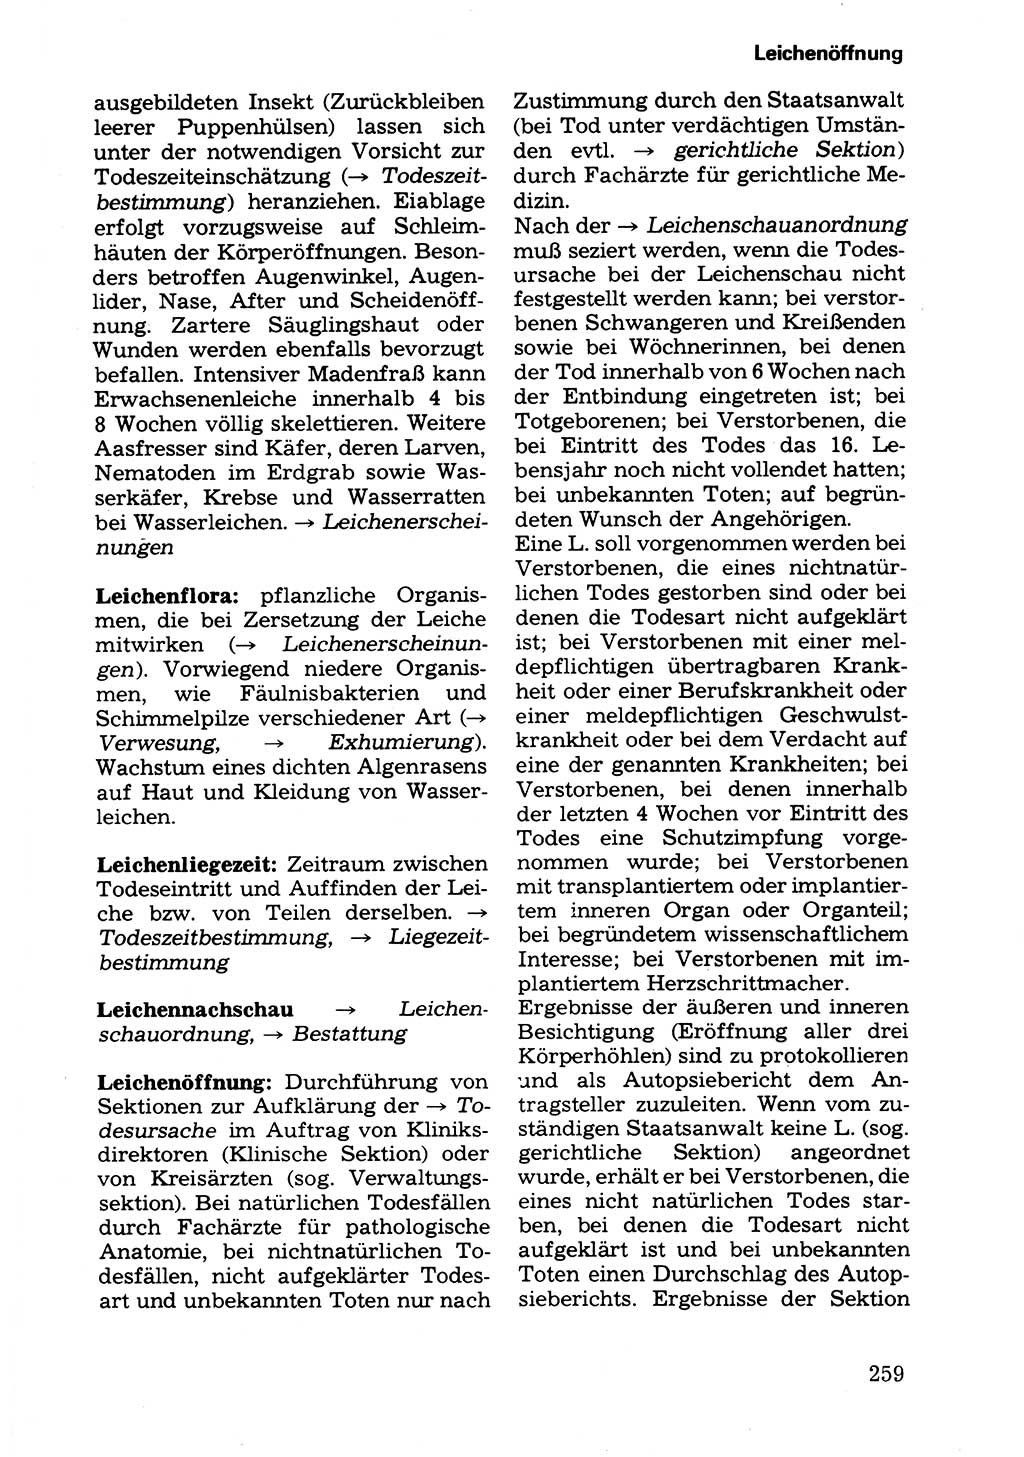 Wörterbuch der sozialistischen Kriminalistik [Deutsche Demokratische Republik (DDR)] 1981, Seite 259 (Wb. soz. Krim. DDR 1981, S. 259)